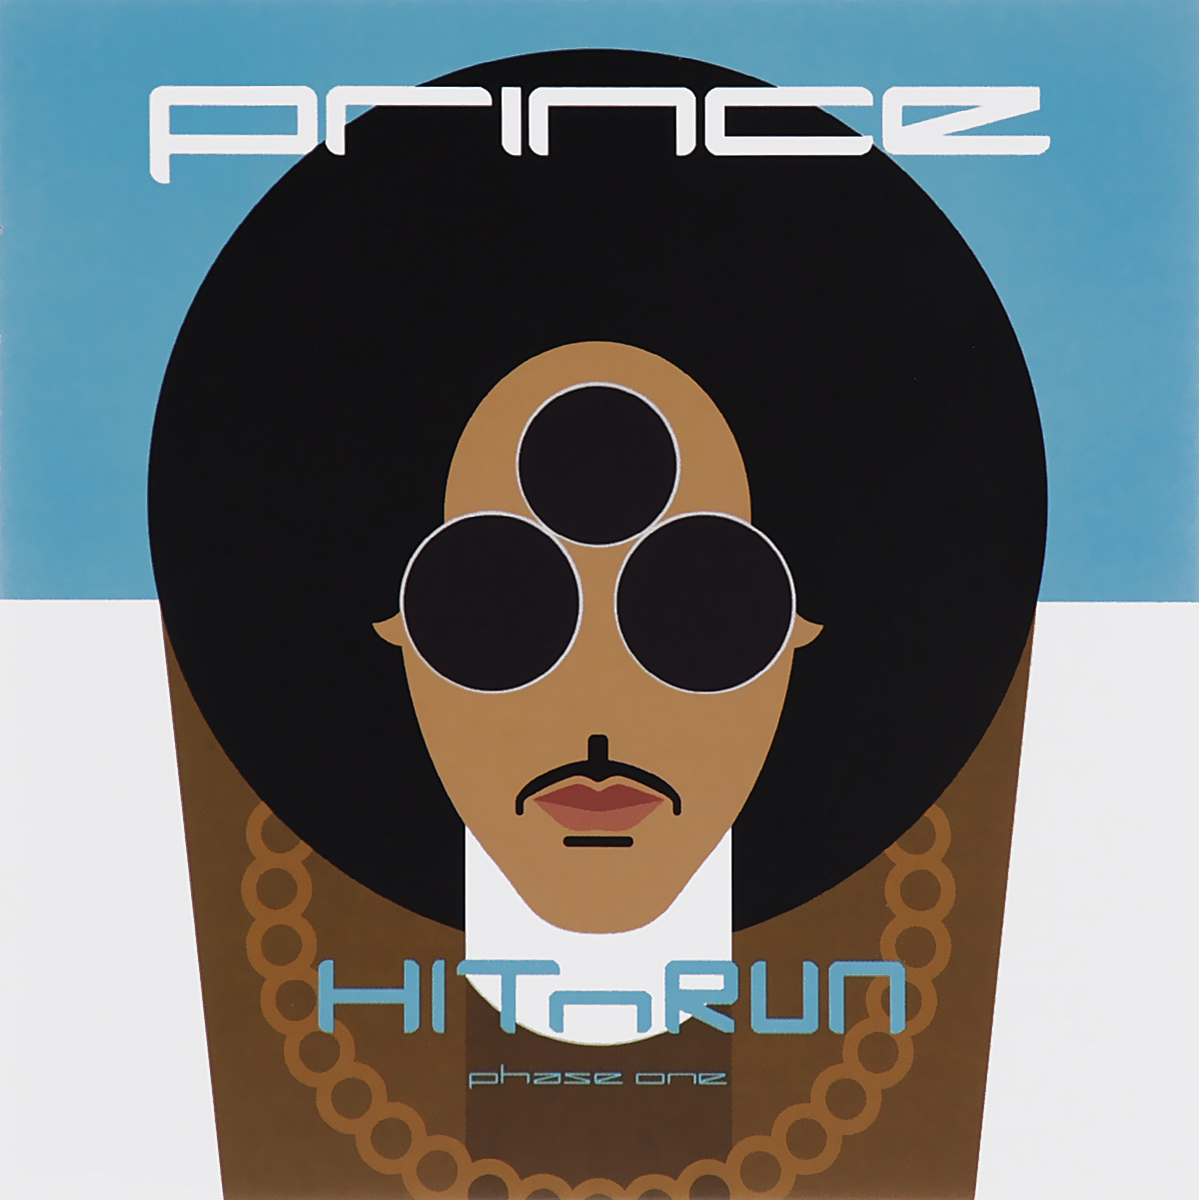 Prince Prince. Hitnrun Phase One